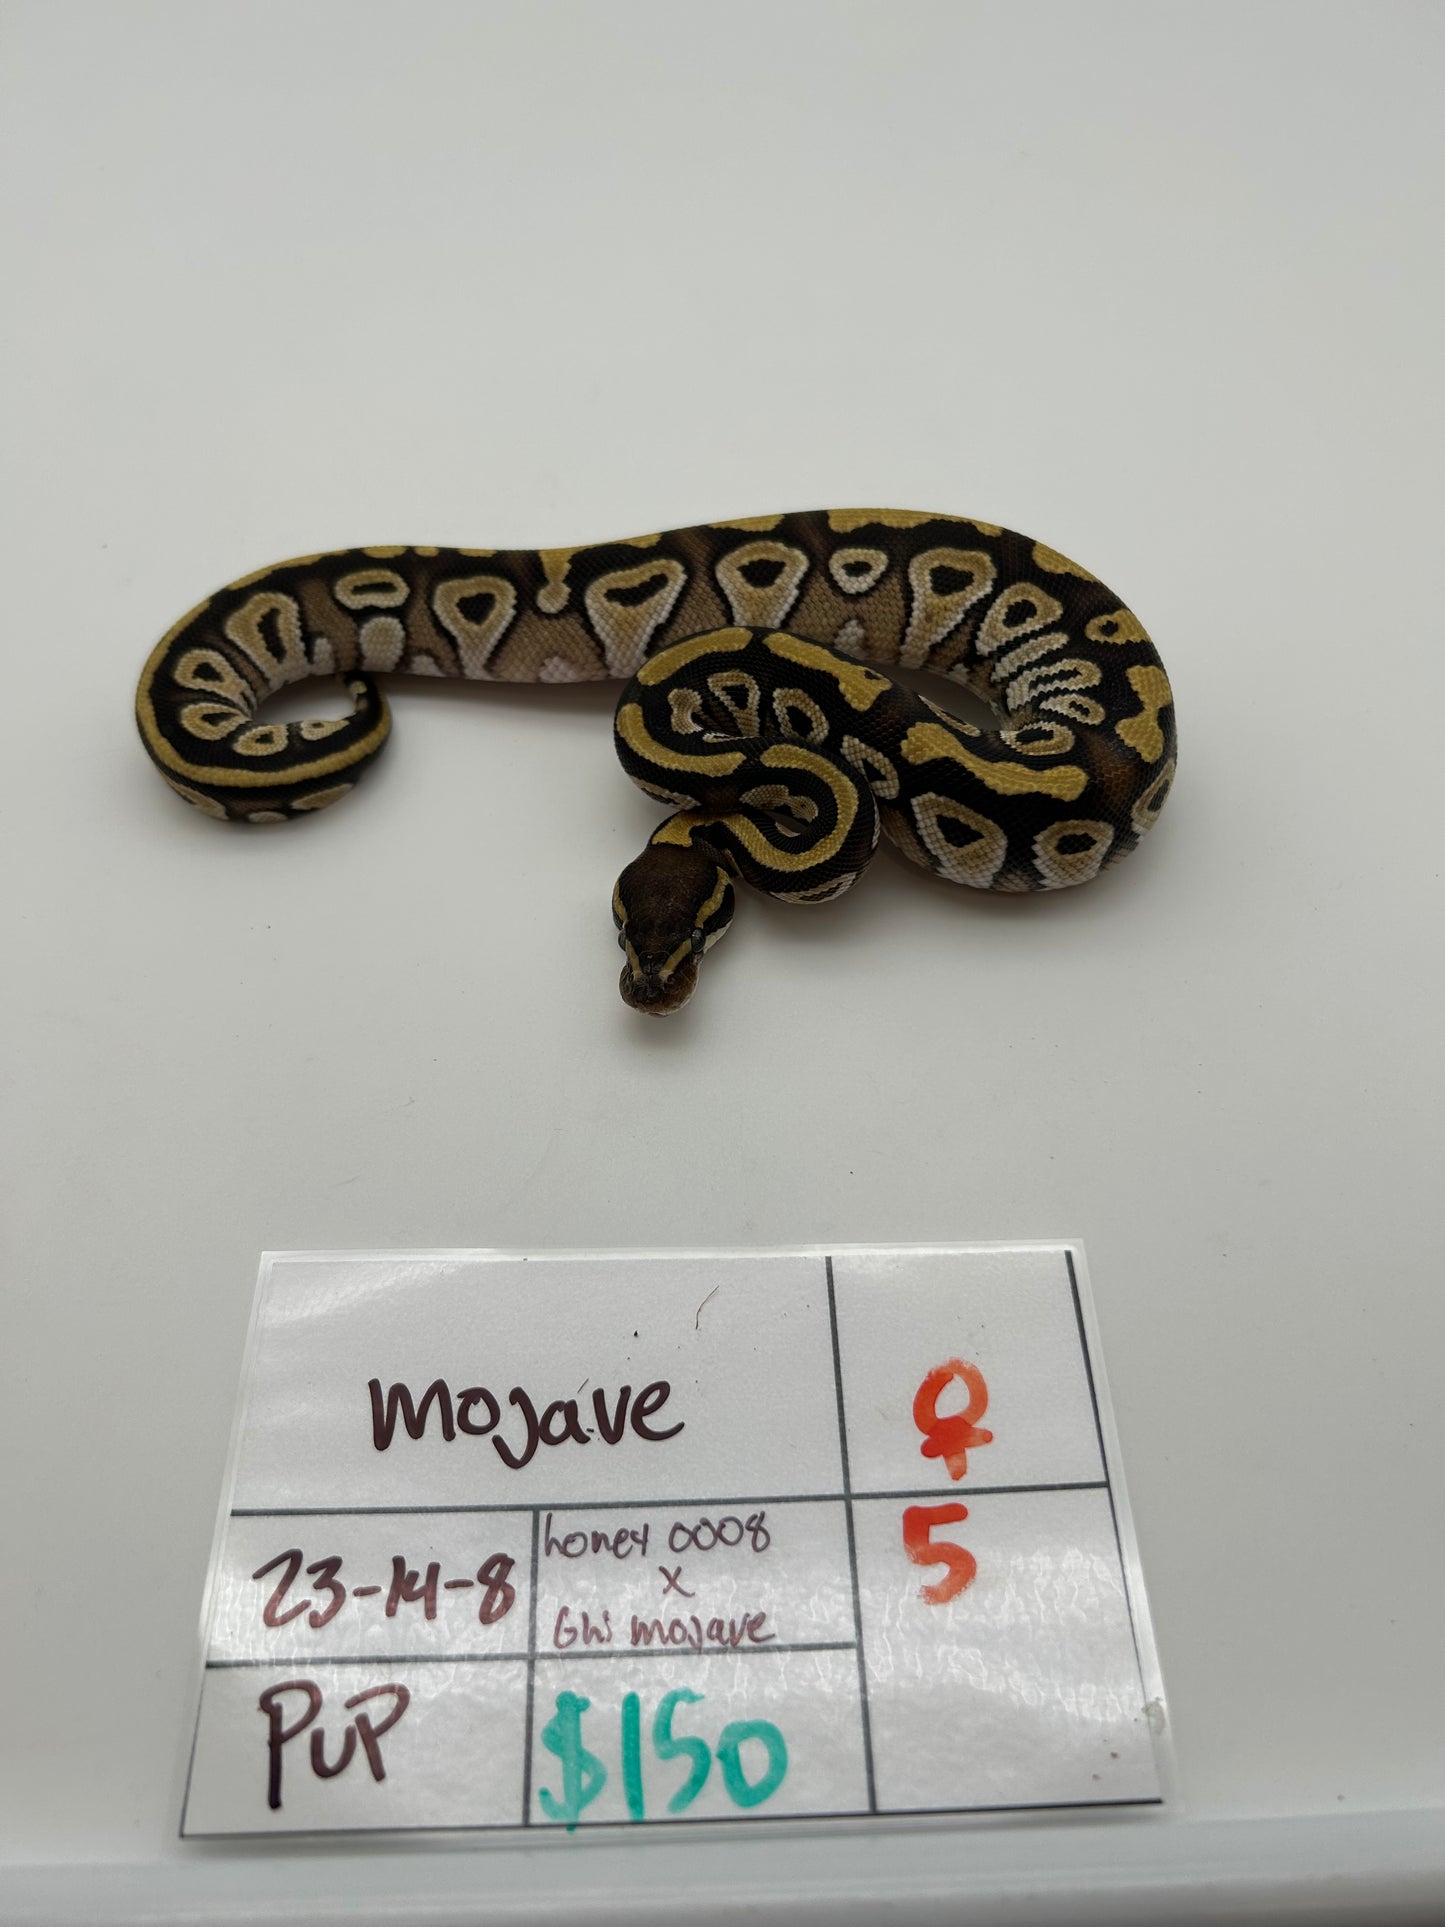 Female Mojave 23-14-8